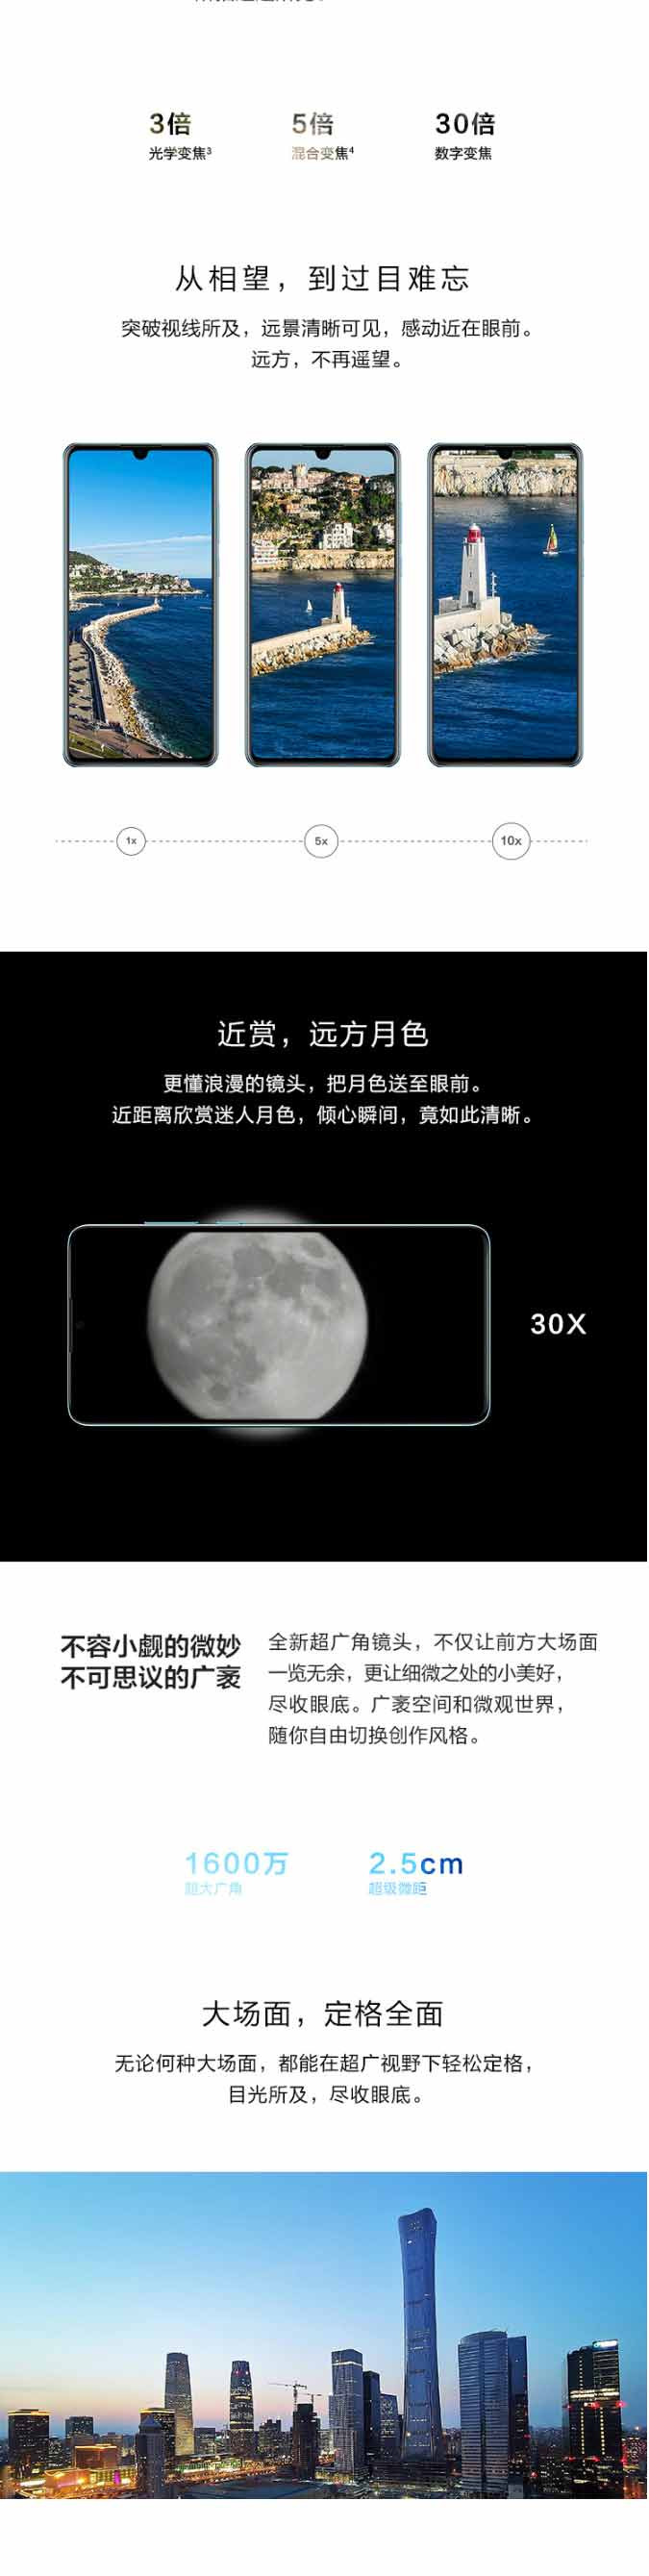 华为 HUAWEI P30 超感光徕卡三摄麒麟全面屏屏内指纹版手机6g+128g